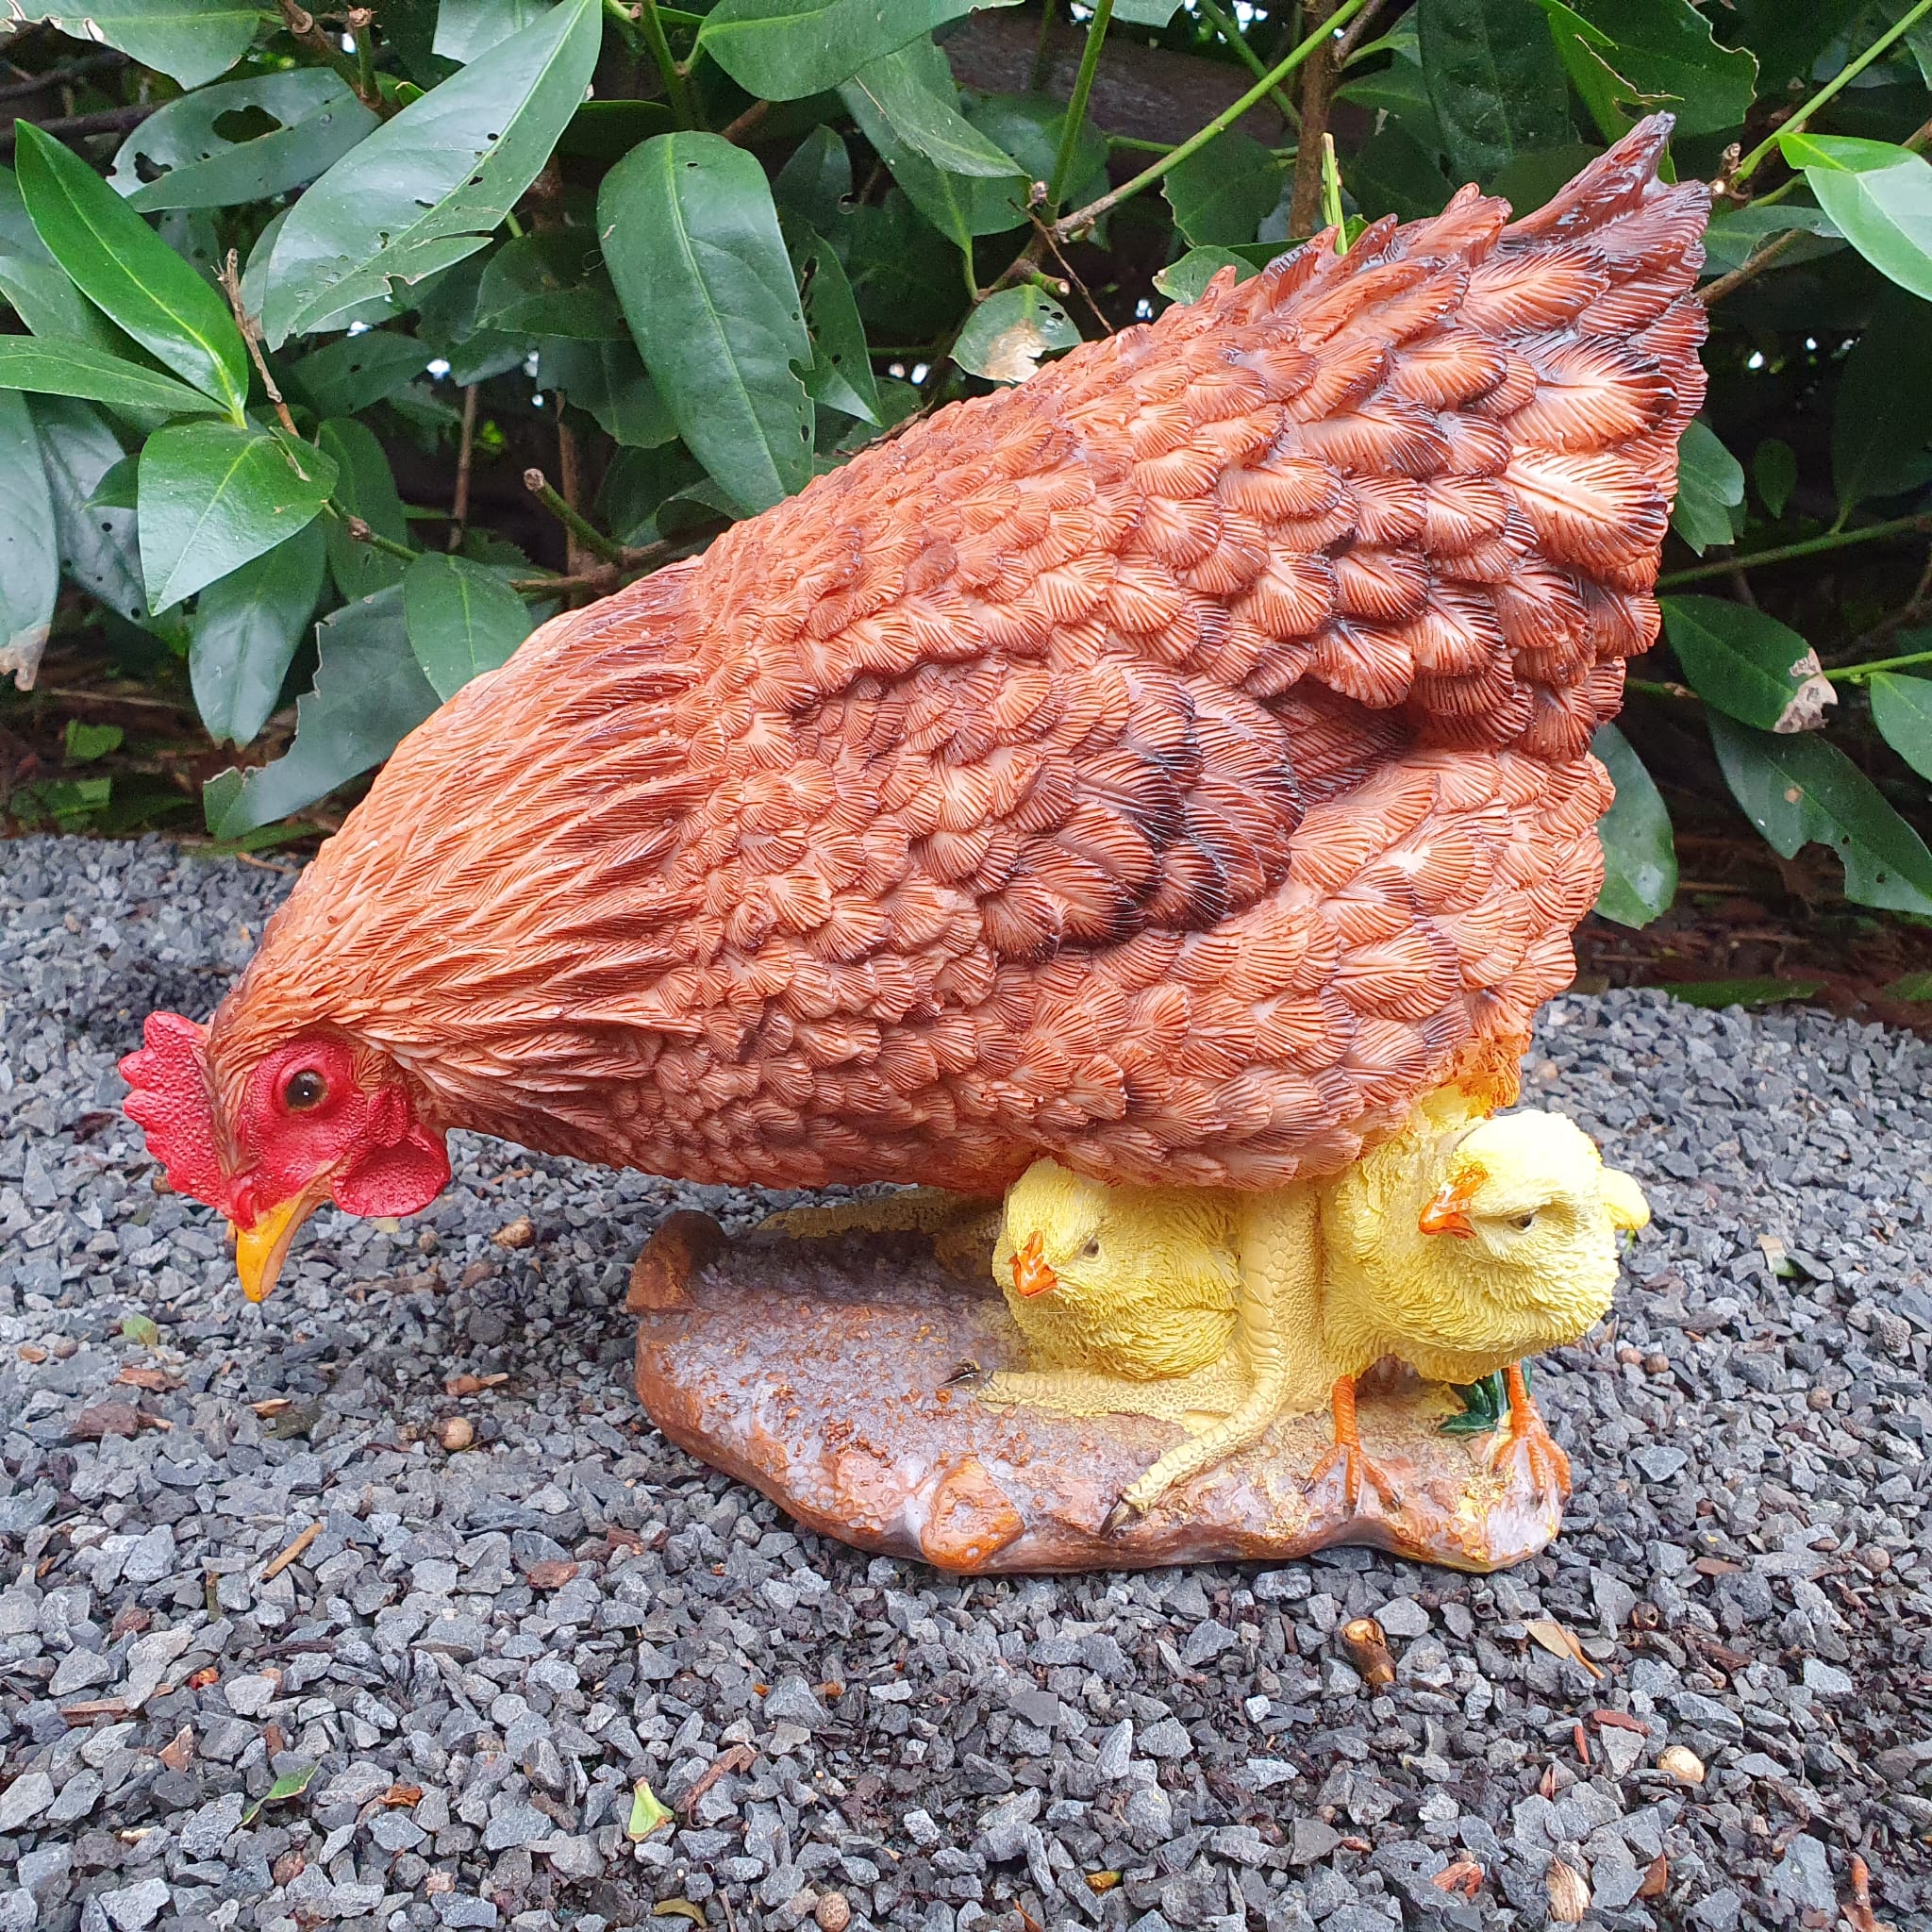 Pickende braune Hühner Gartenfigur mit gelben Küken